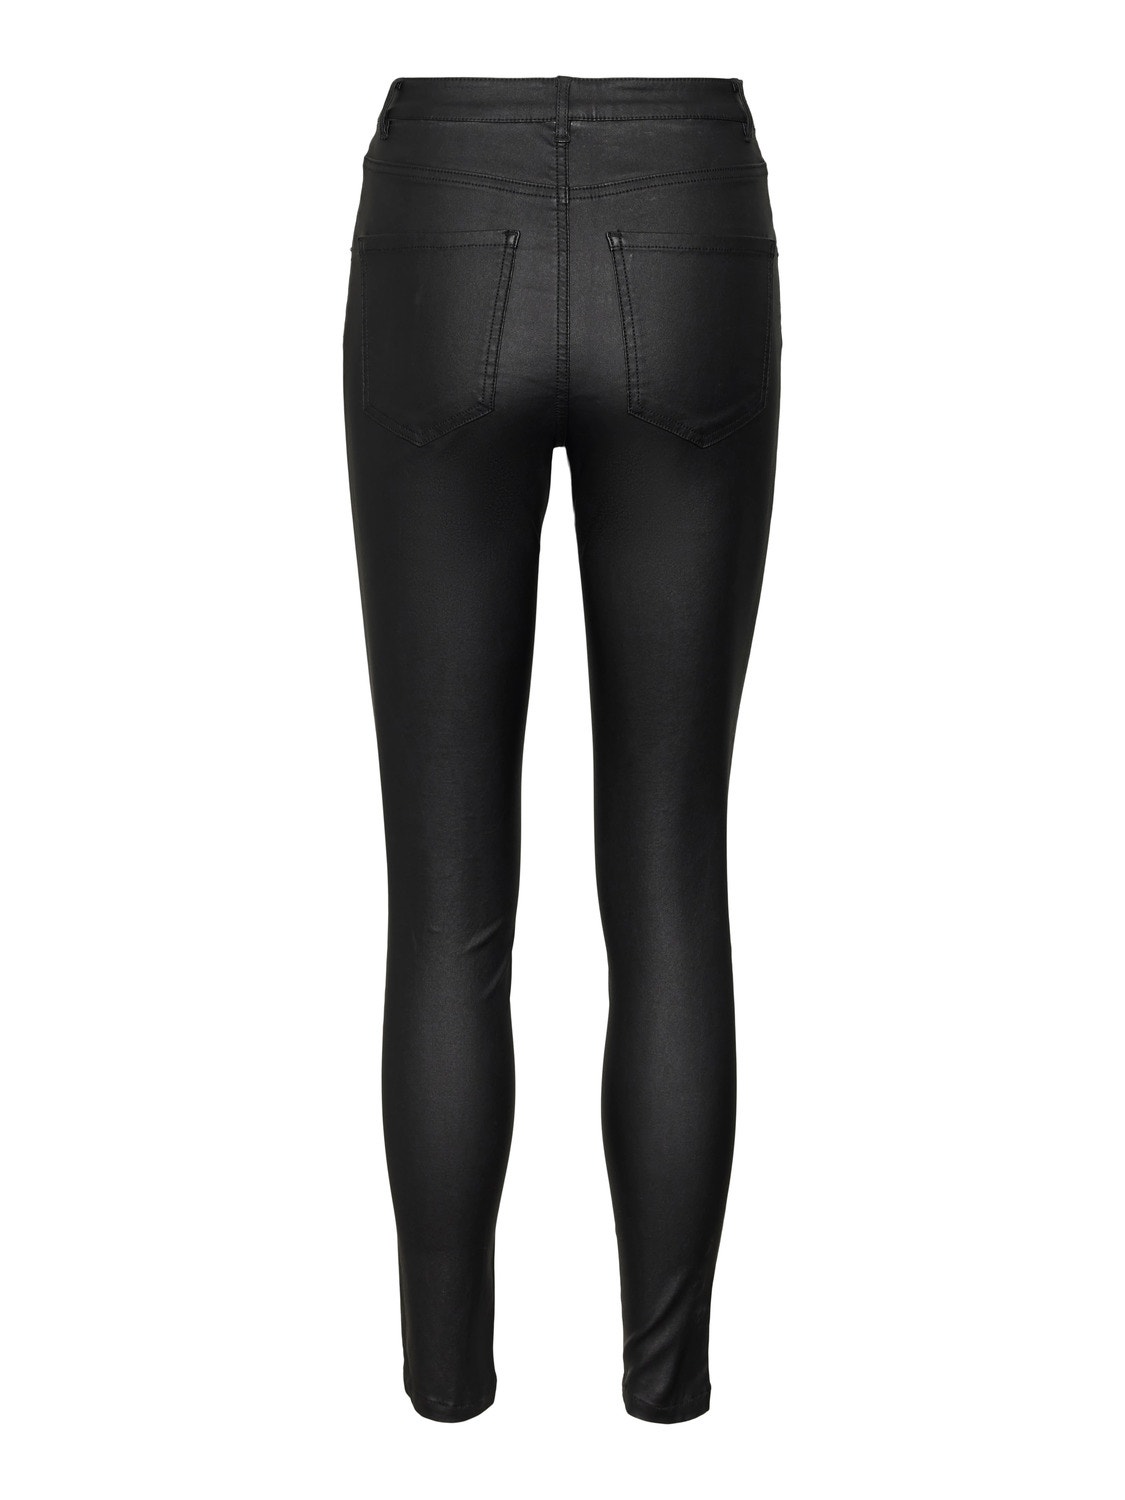 Vero Moda VMSOPHIA Taille haute Skinny Fit Jeans -Black - 10280555